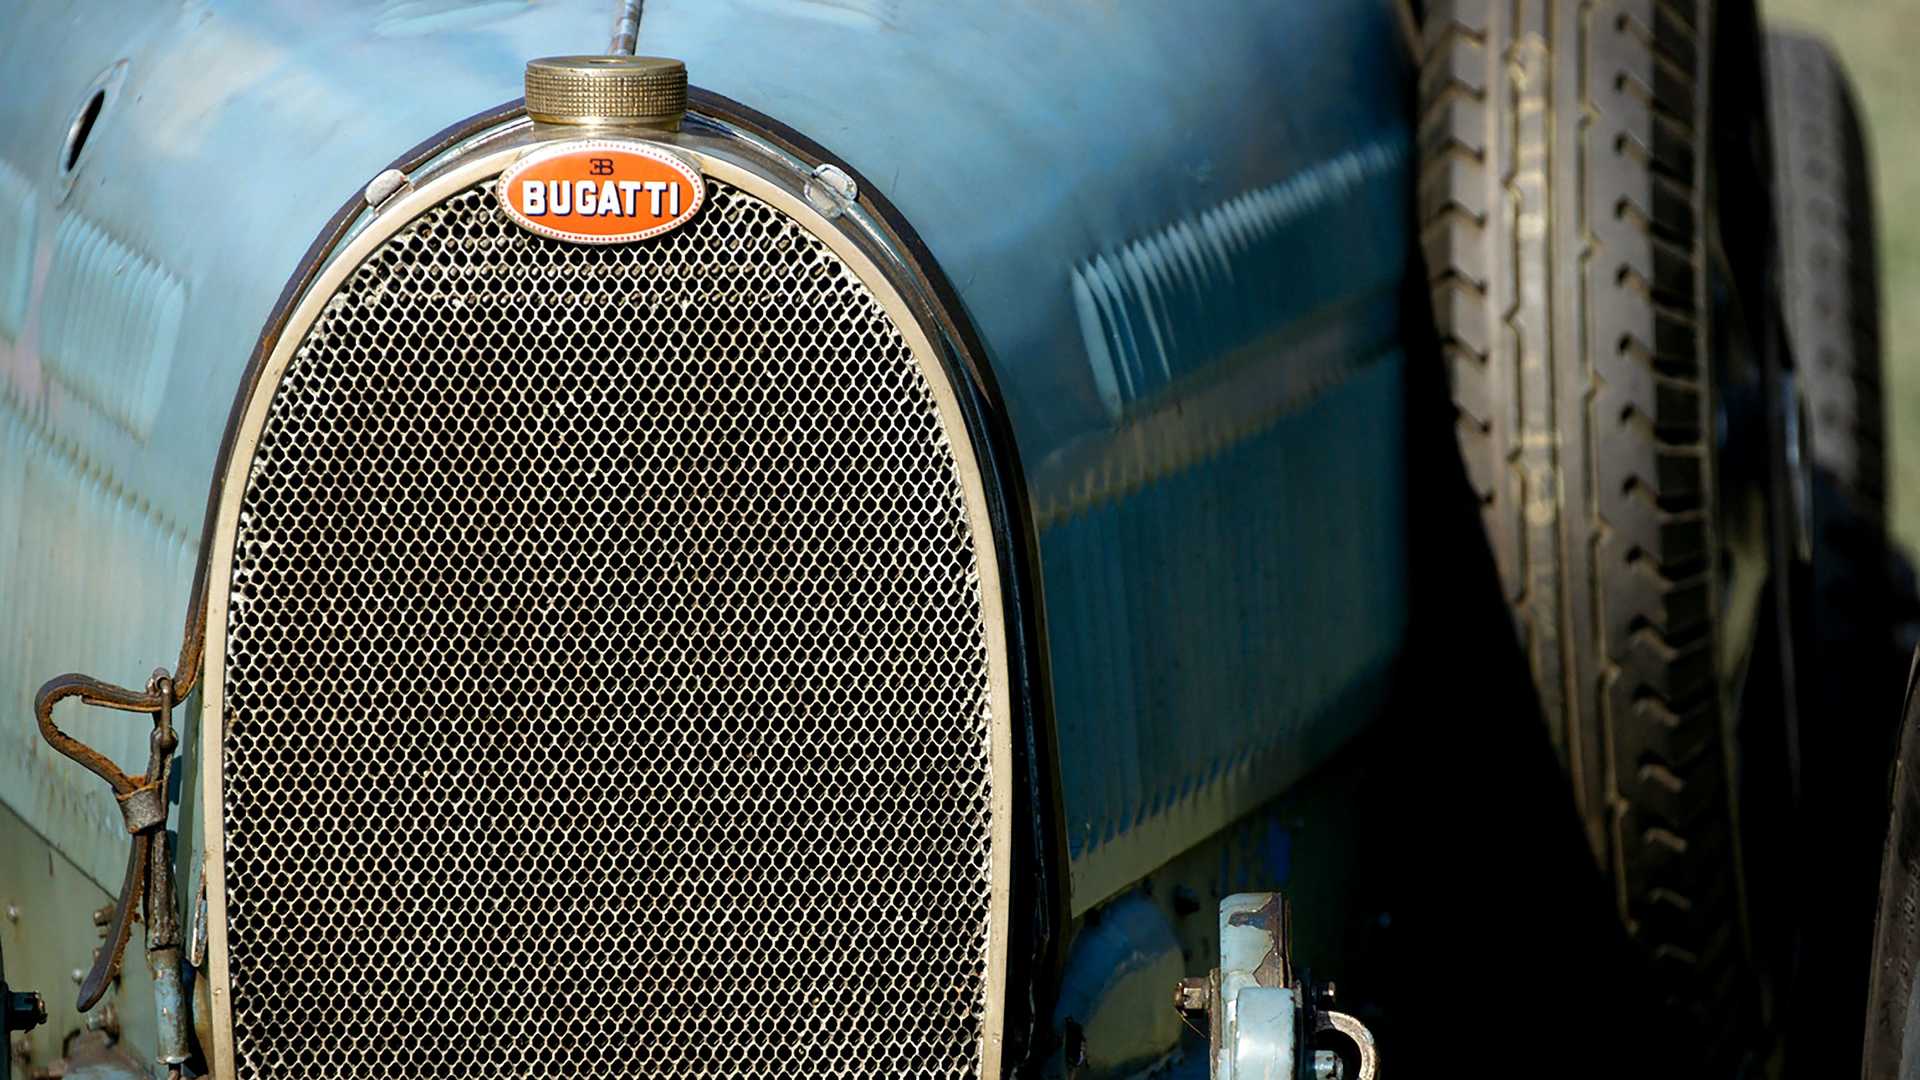 10 điều về huy hiệu Bugatti mà bạn chưa biết